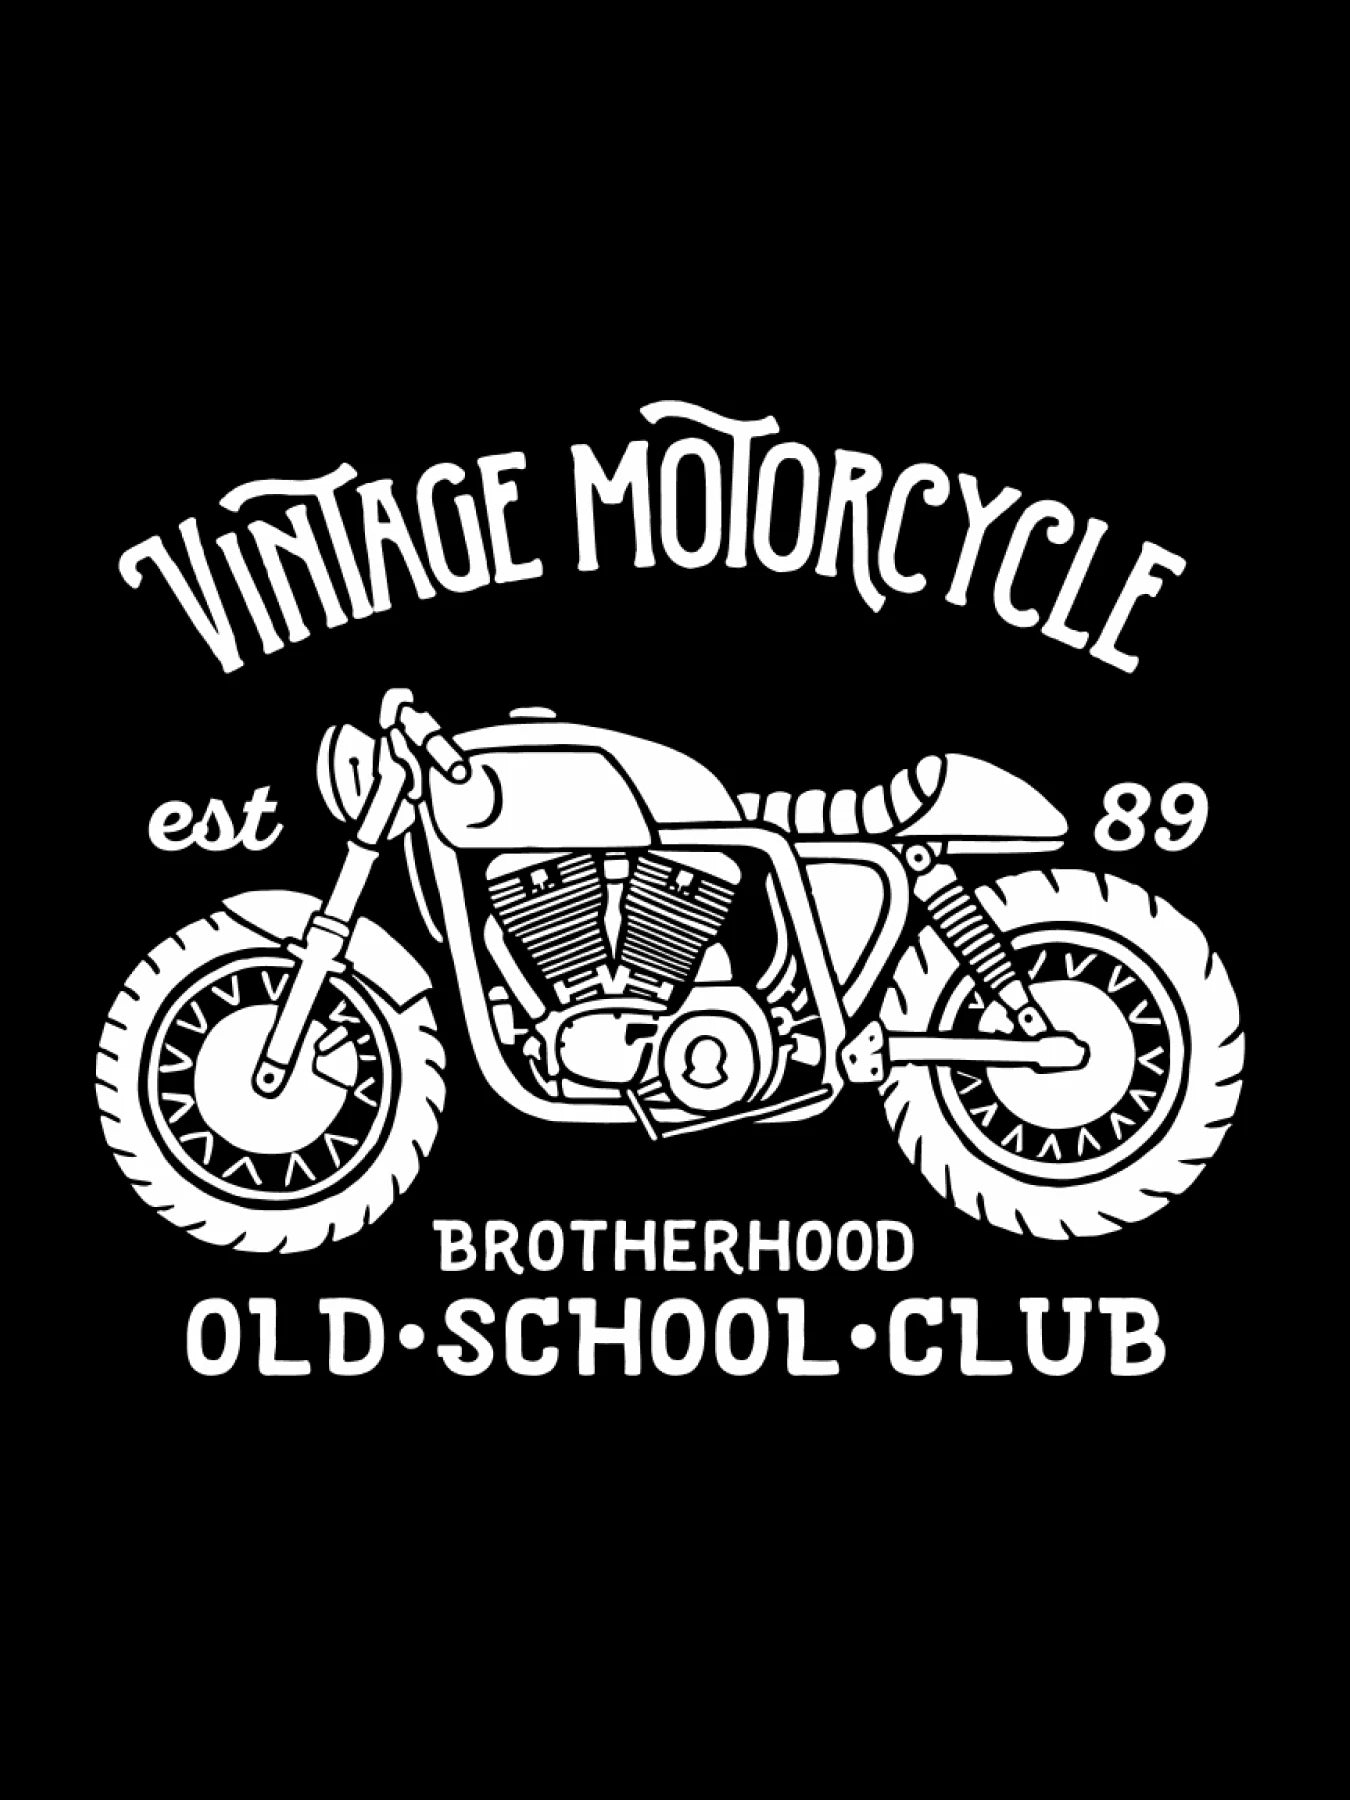 Brotherhood - Vintage Motorcycle